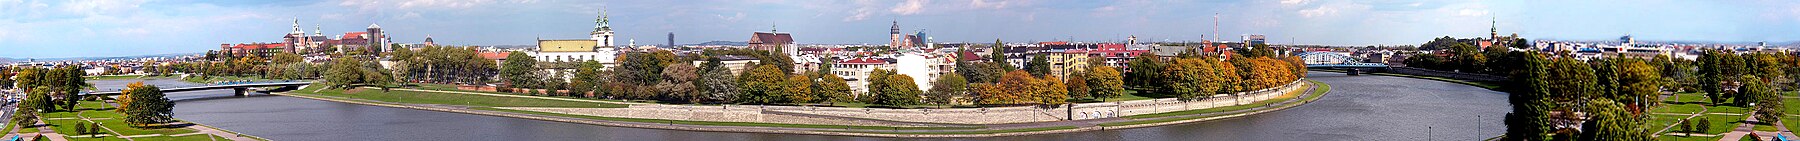 Panorama van Krakau vanaf het Forum Hotel.jpg